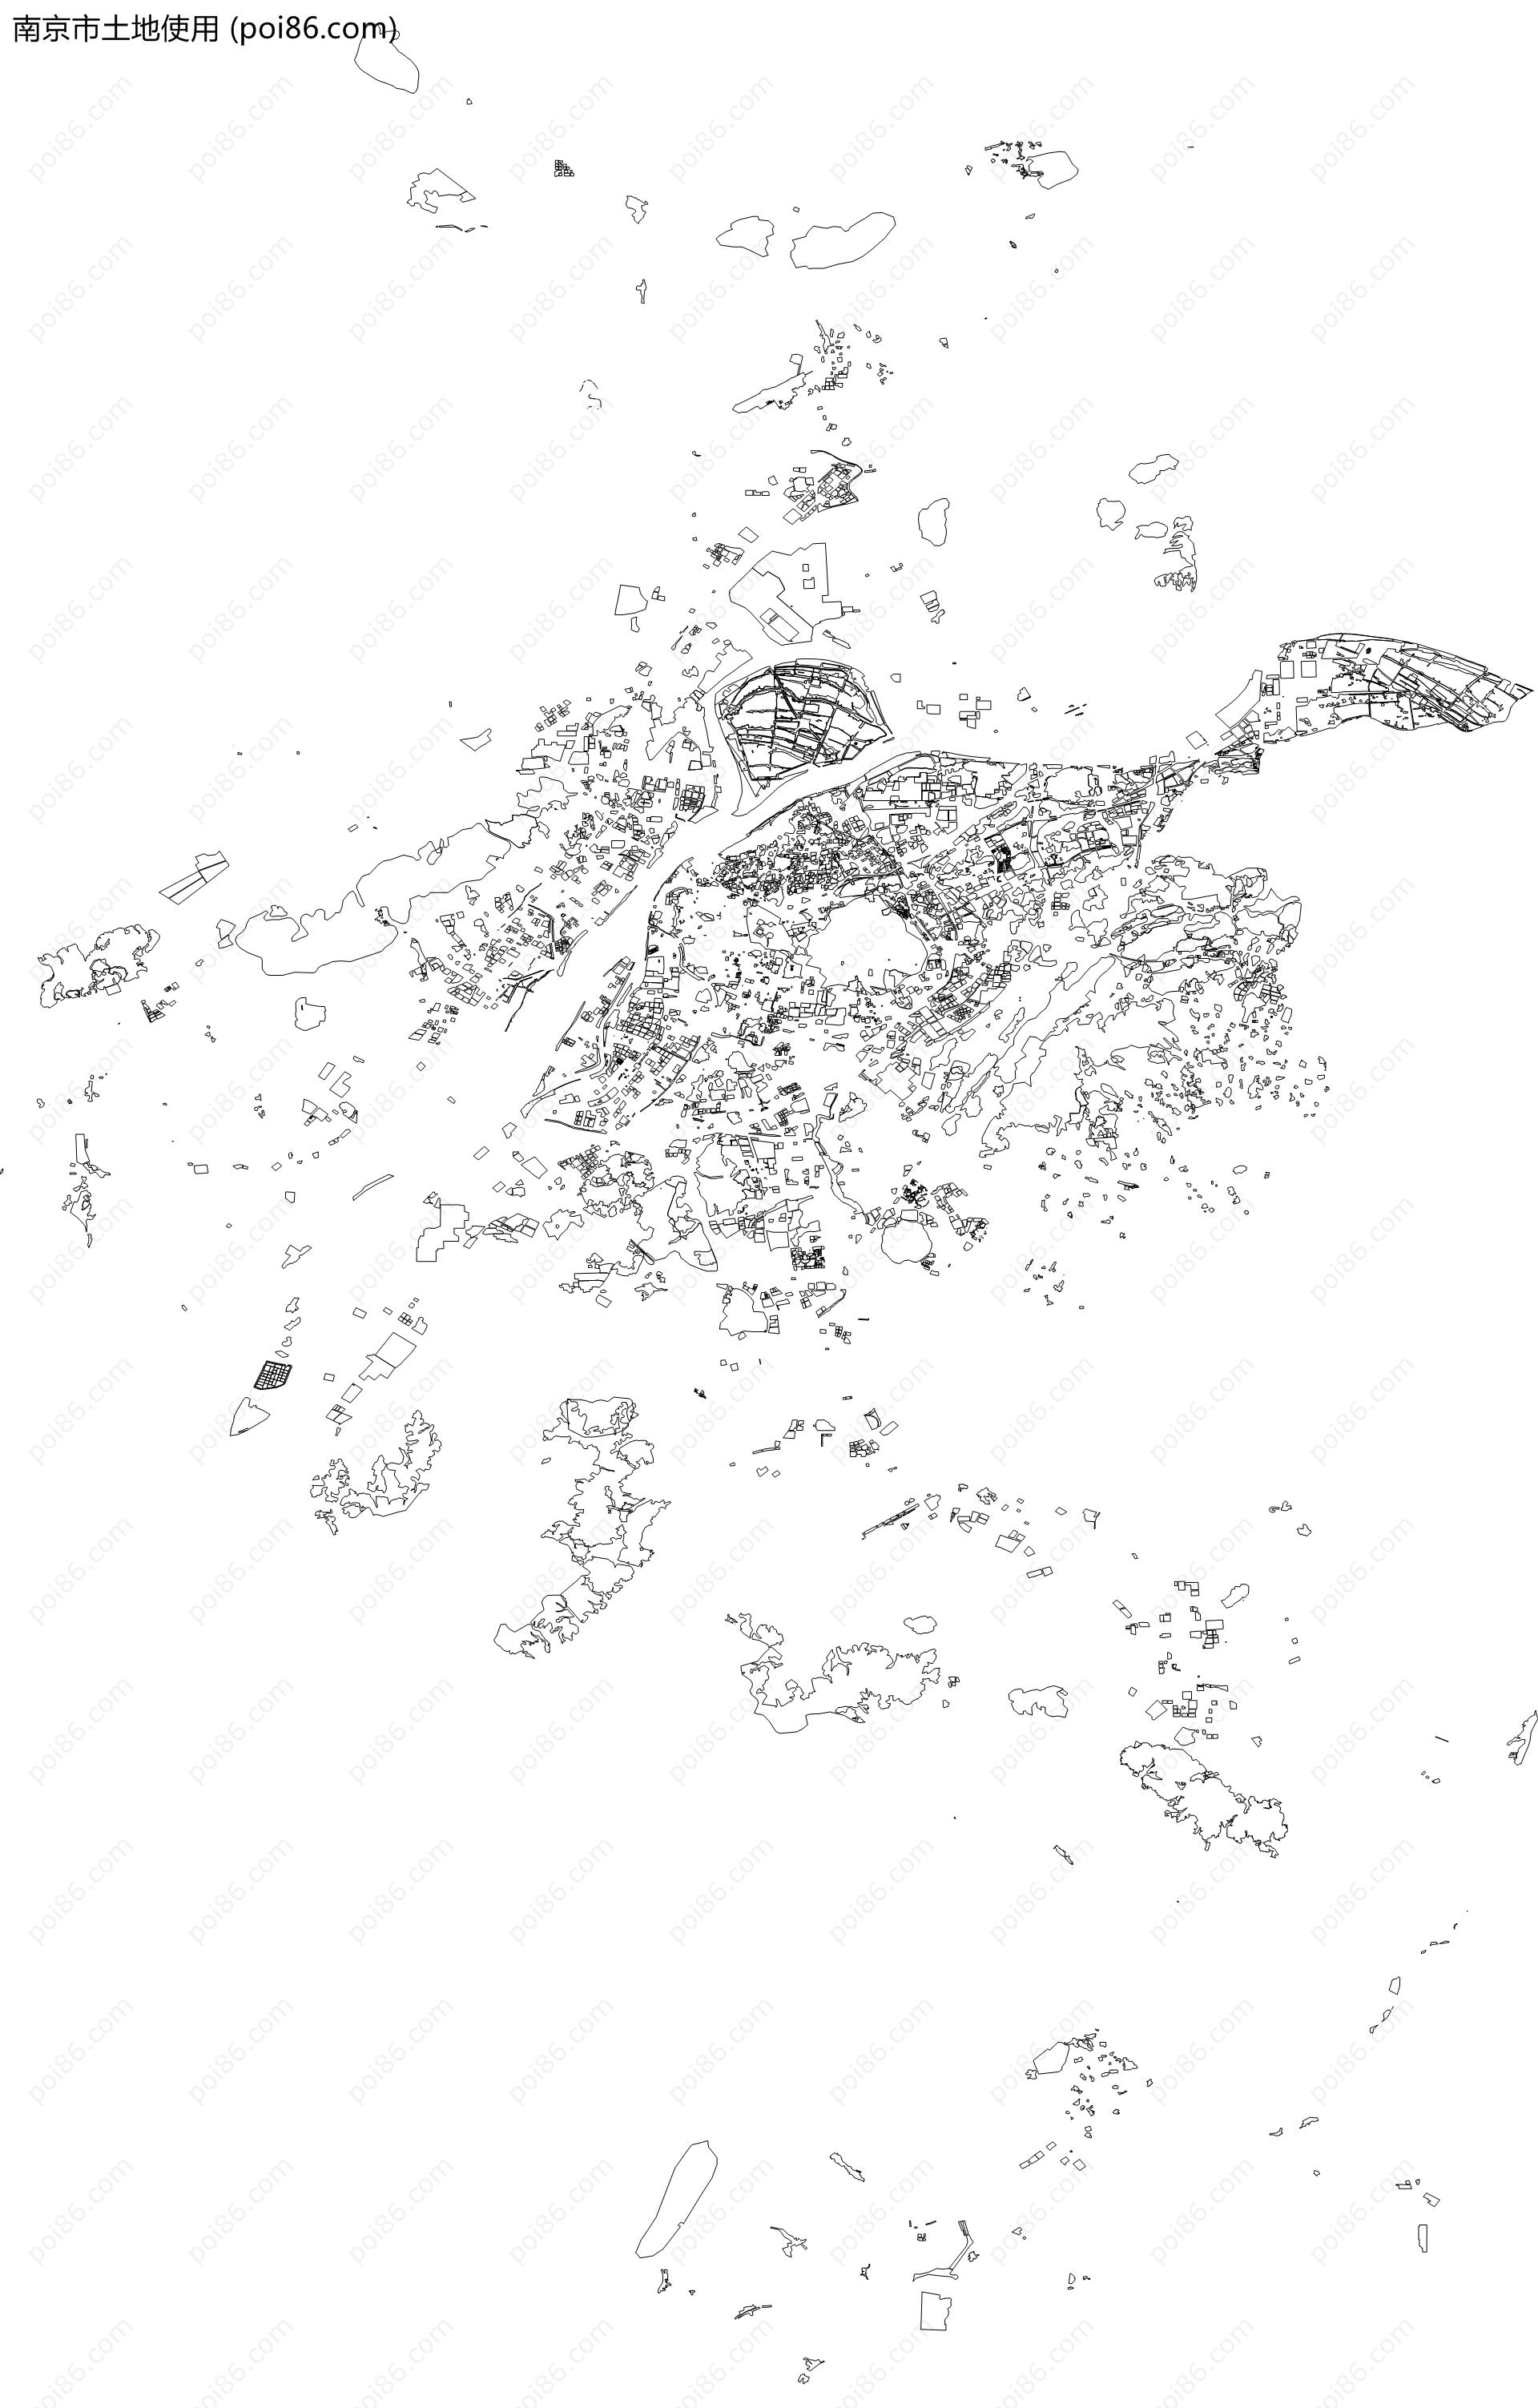 南京市土地使用地图